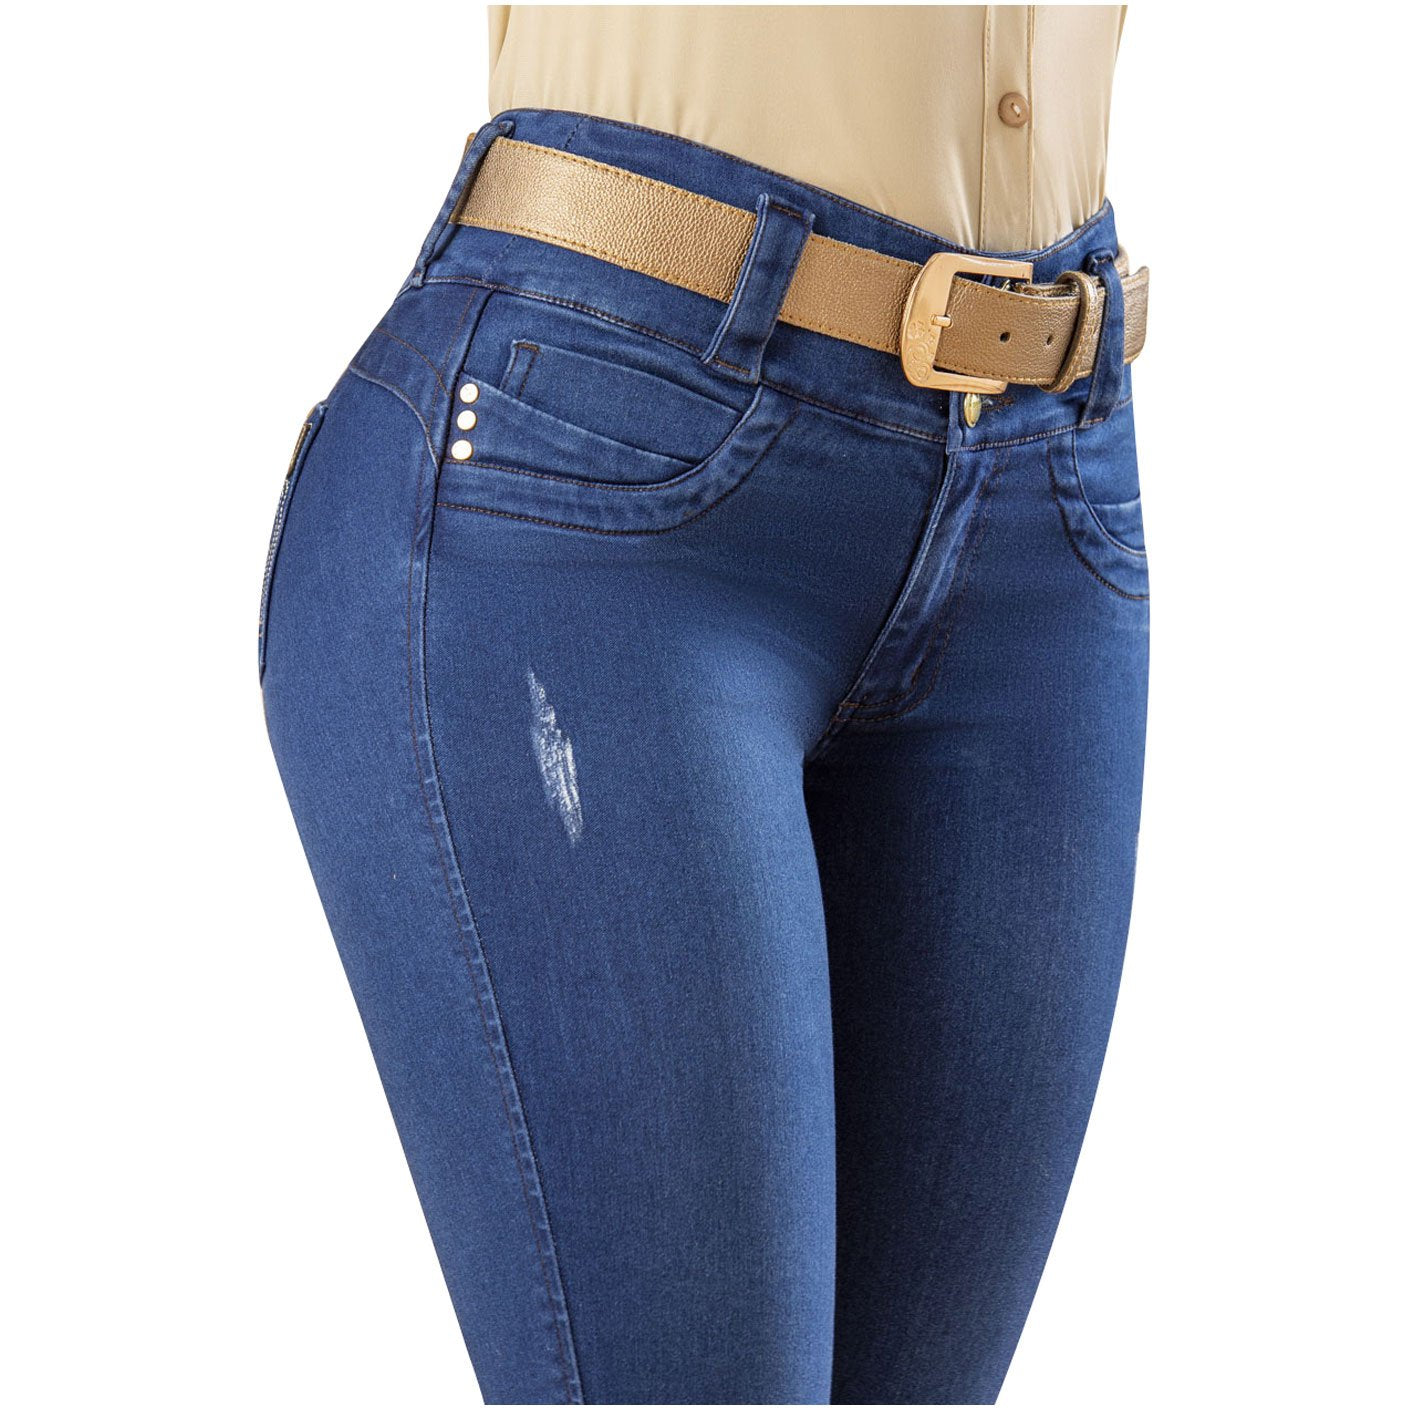 Draxy 1449 | Heavy Butt Lifter & Booster Classic Skinny Tight Looks in Denim Jeans - fajacolombian